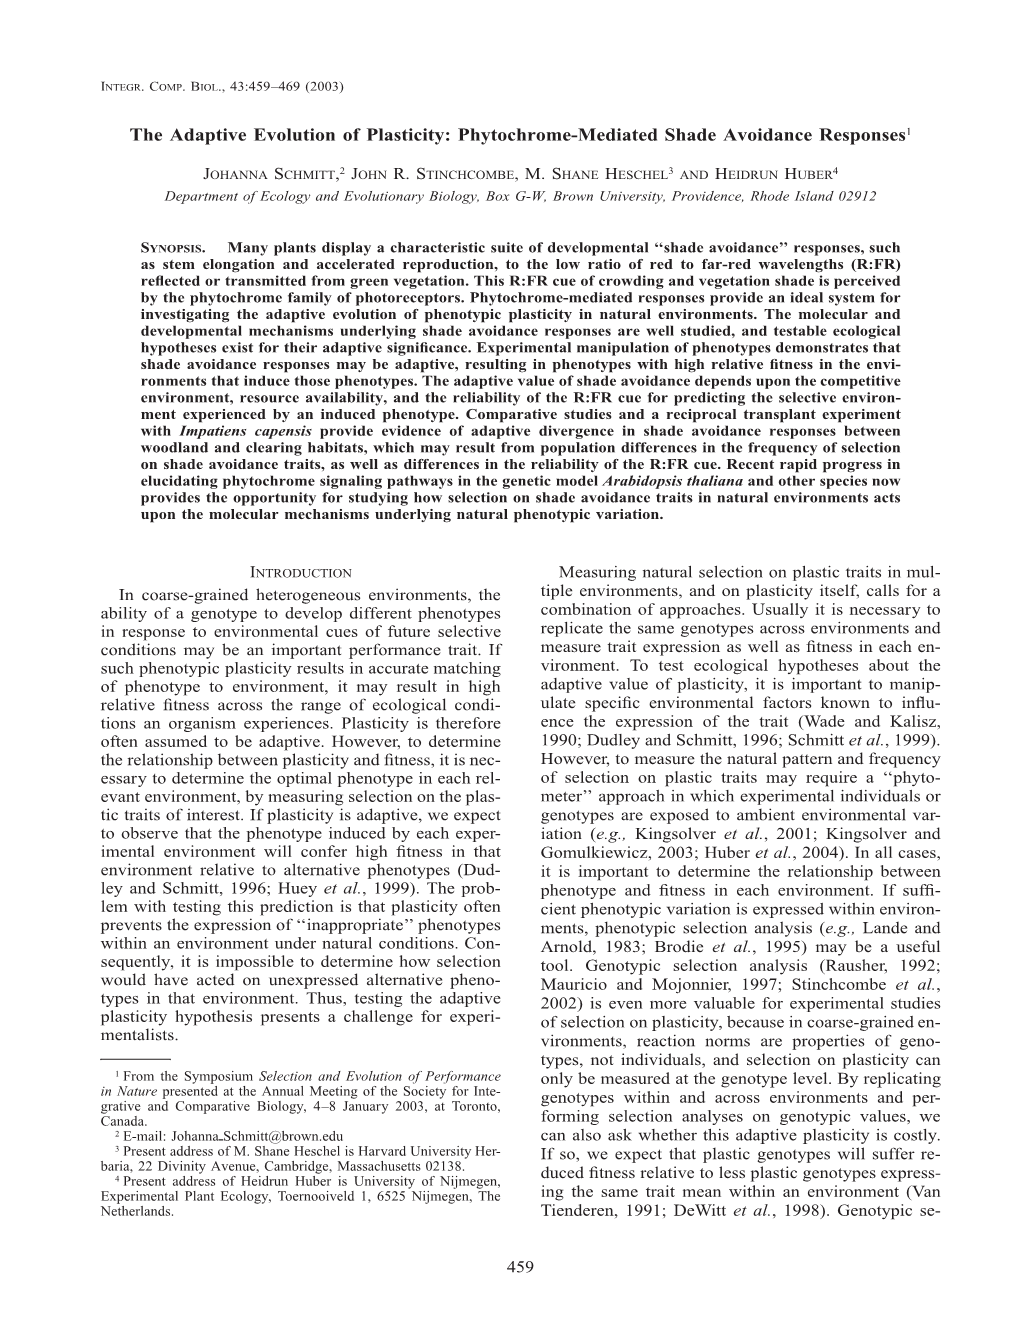 Phytochrome-Mediated Shade Avoidance Responses1